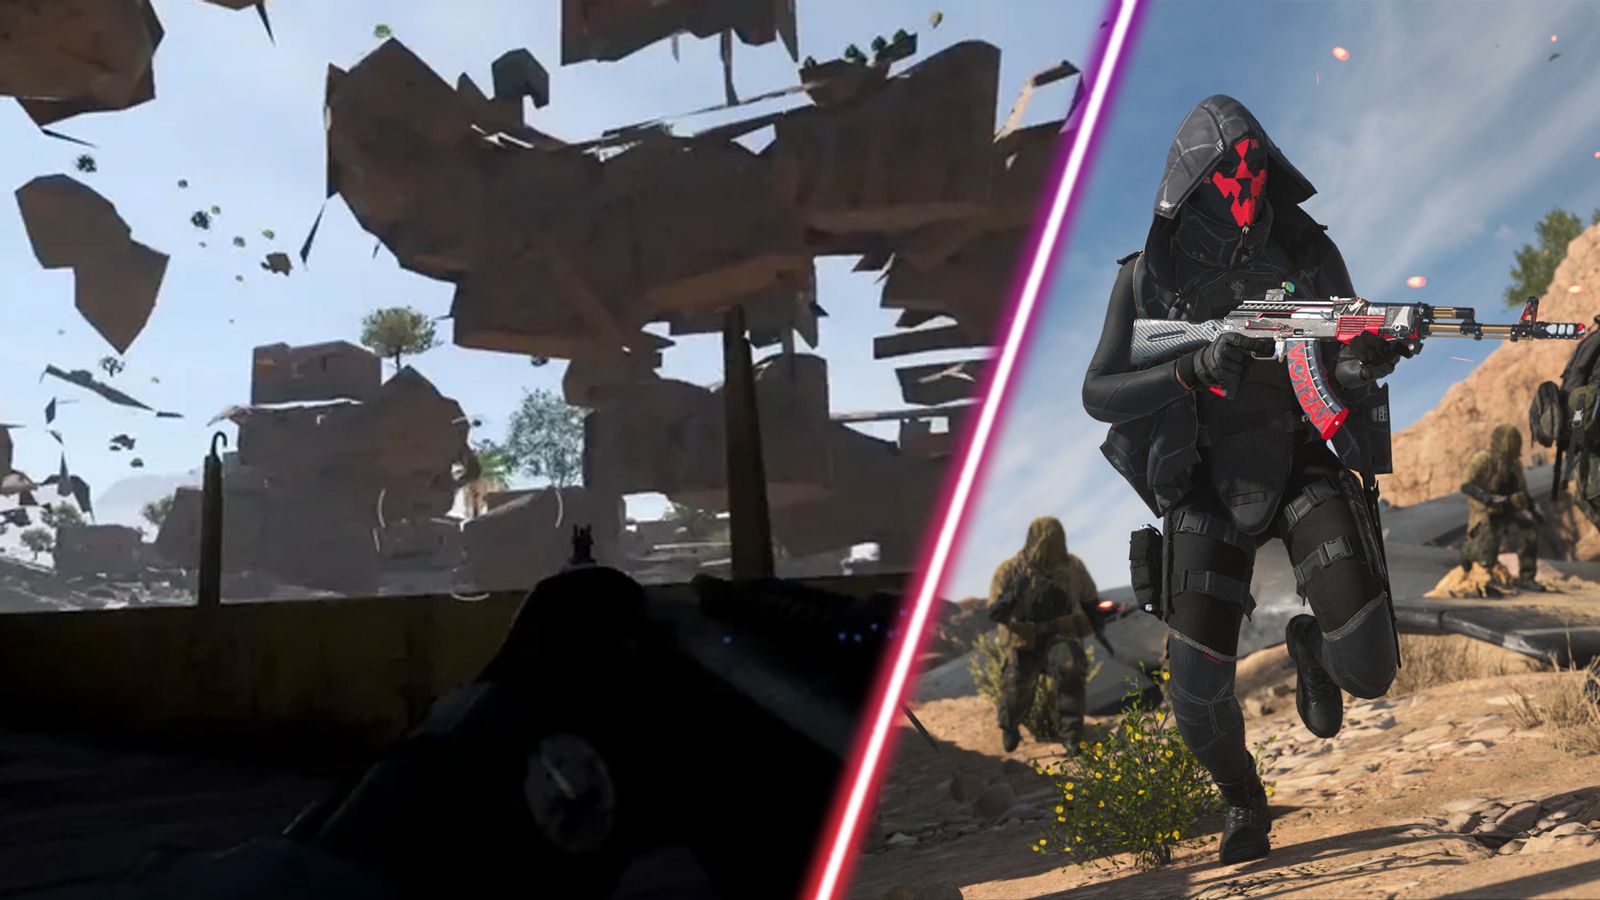 Screenshot of Modern Warfare 2 player stuck underneath the map and Modern Warfare 2 player sprinting and holding assault rifle